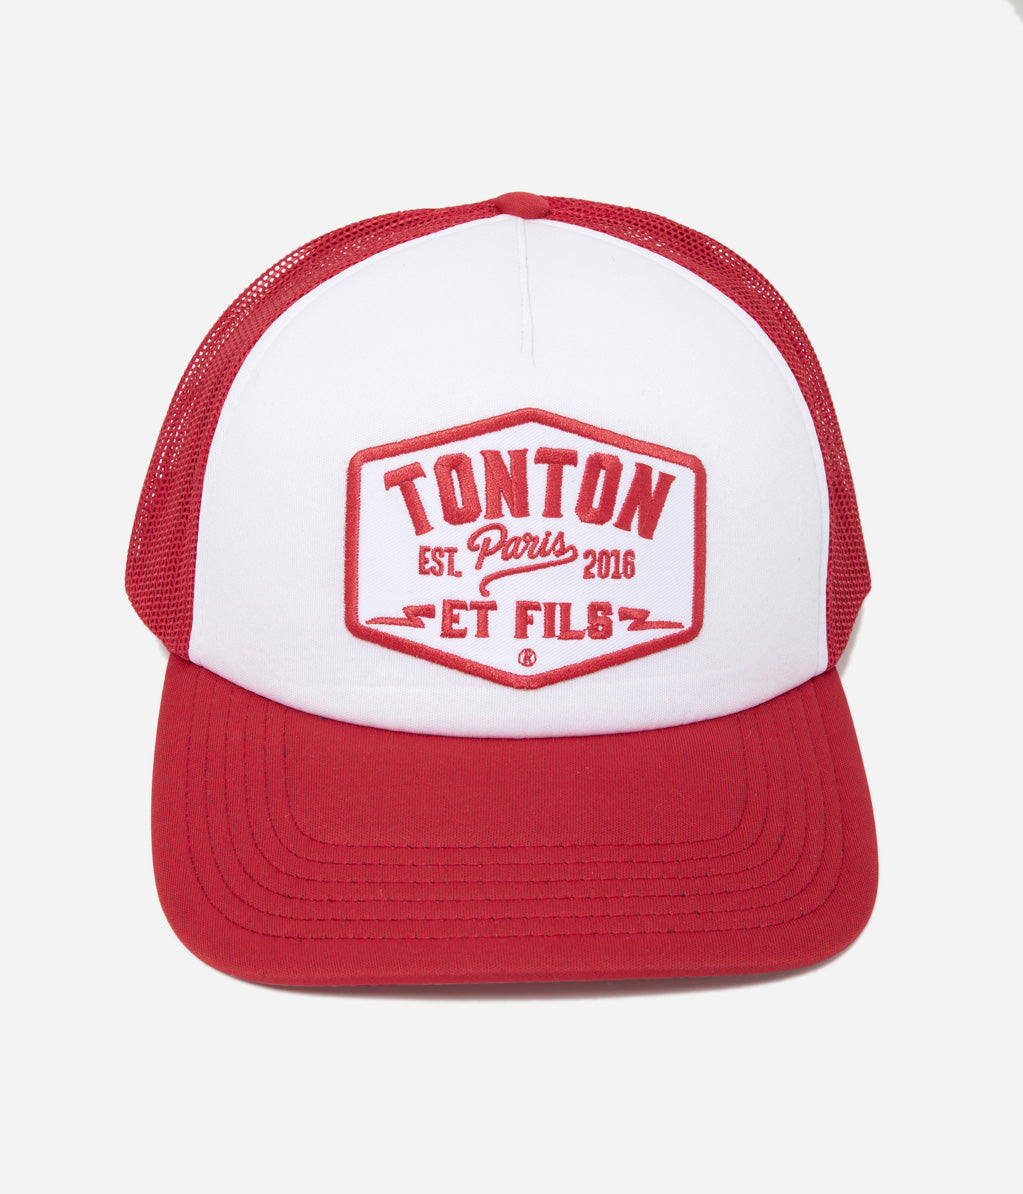 Tonton et Fils - Casquette "Trucker" - coloris Rouge-Blanc - Vue face avant